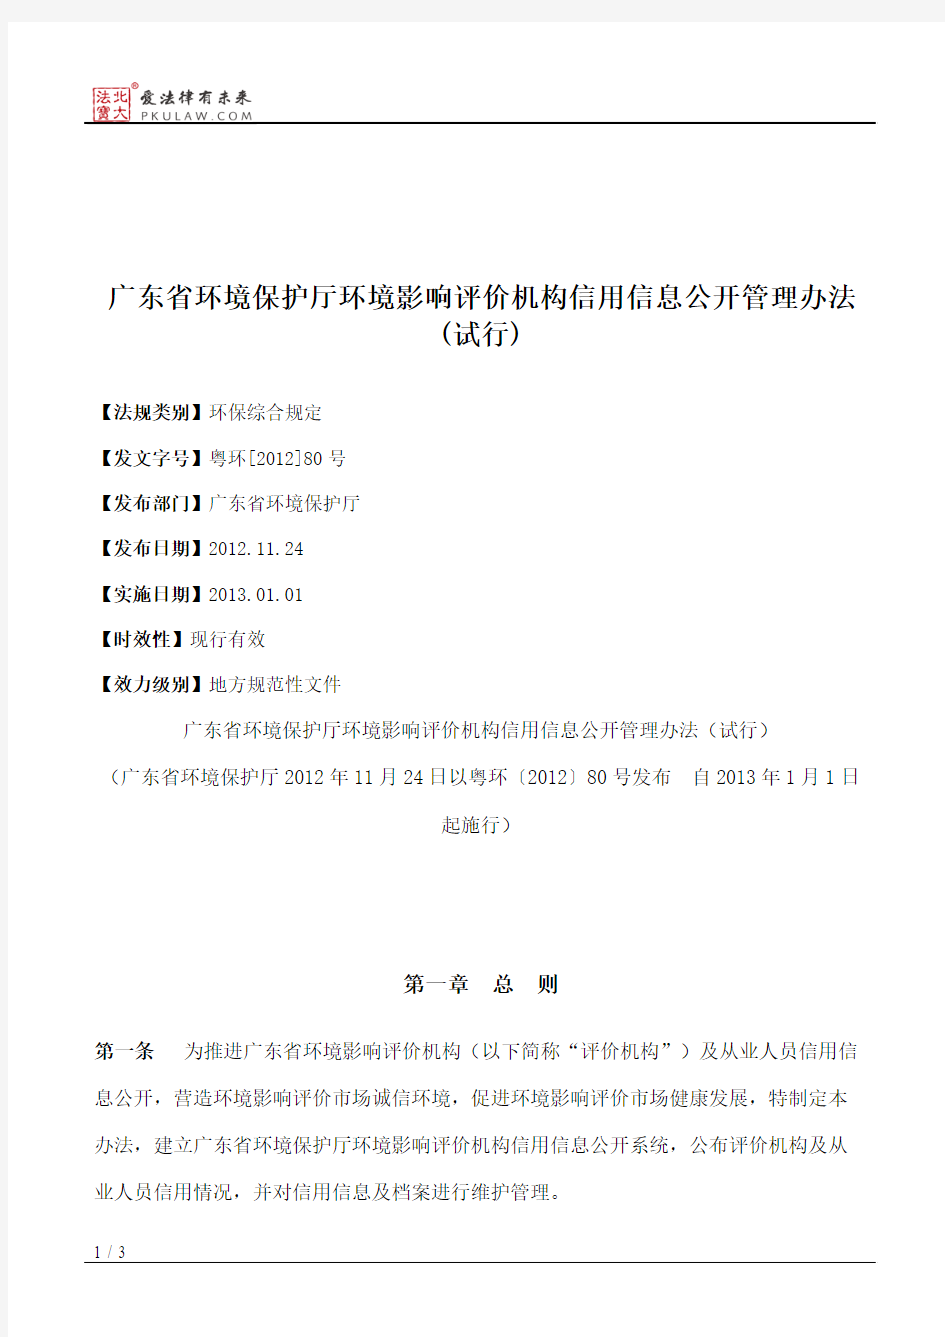 广东省环境保护厅环境影响评价机构信用信息公开管理办法(试行)